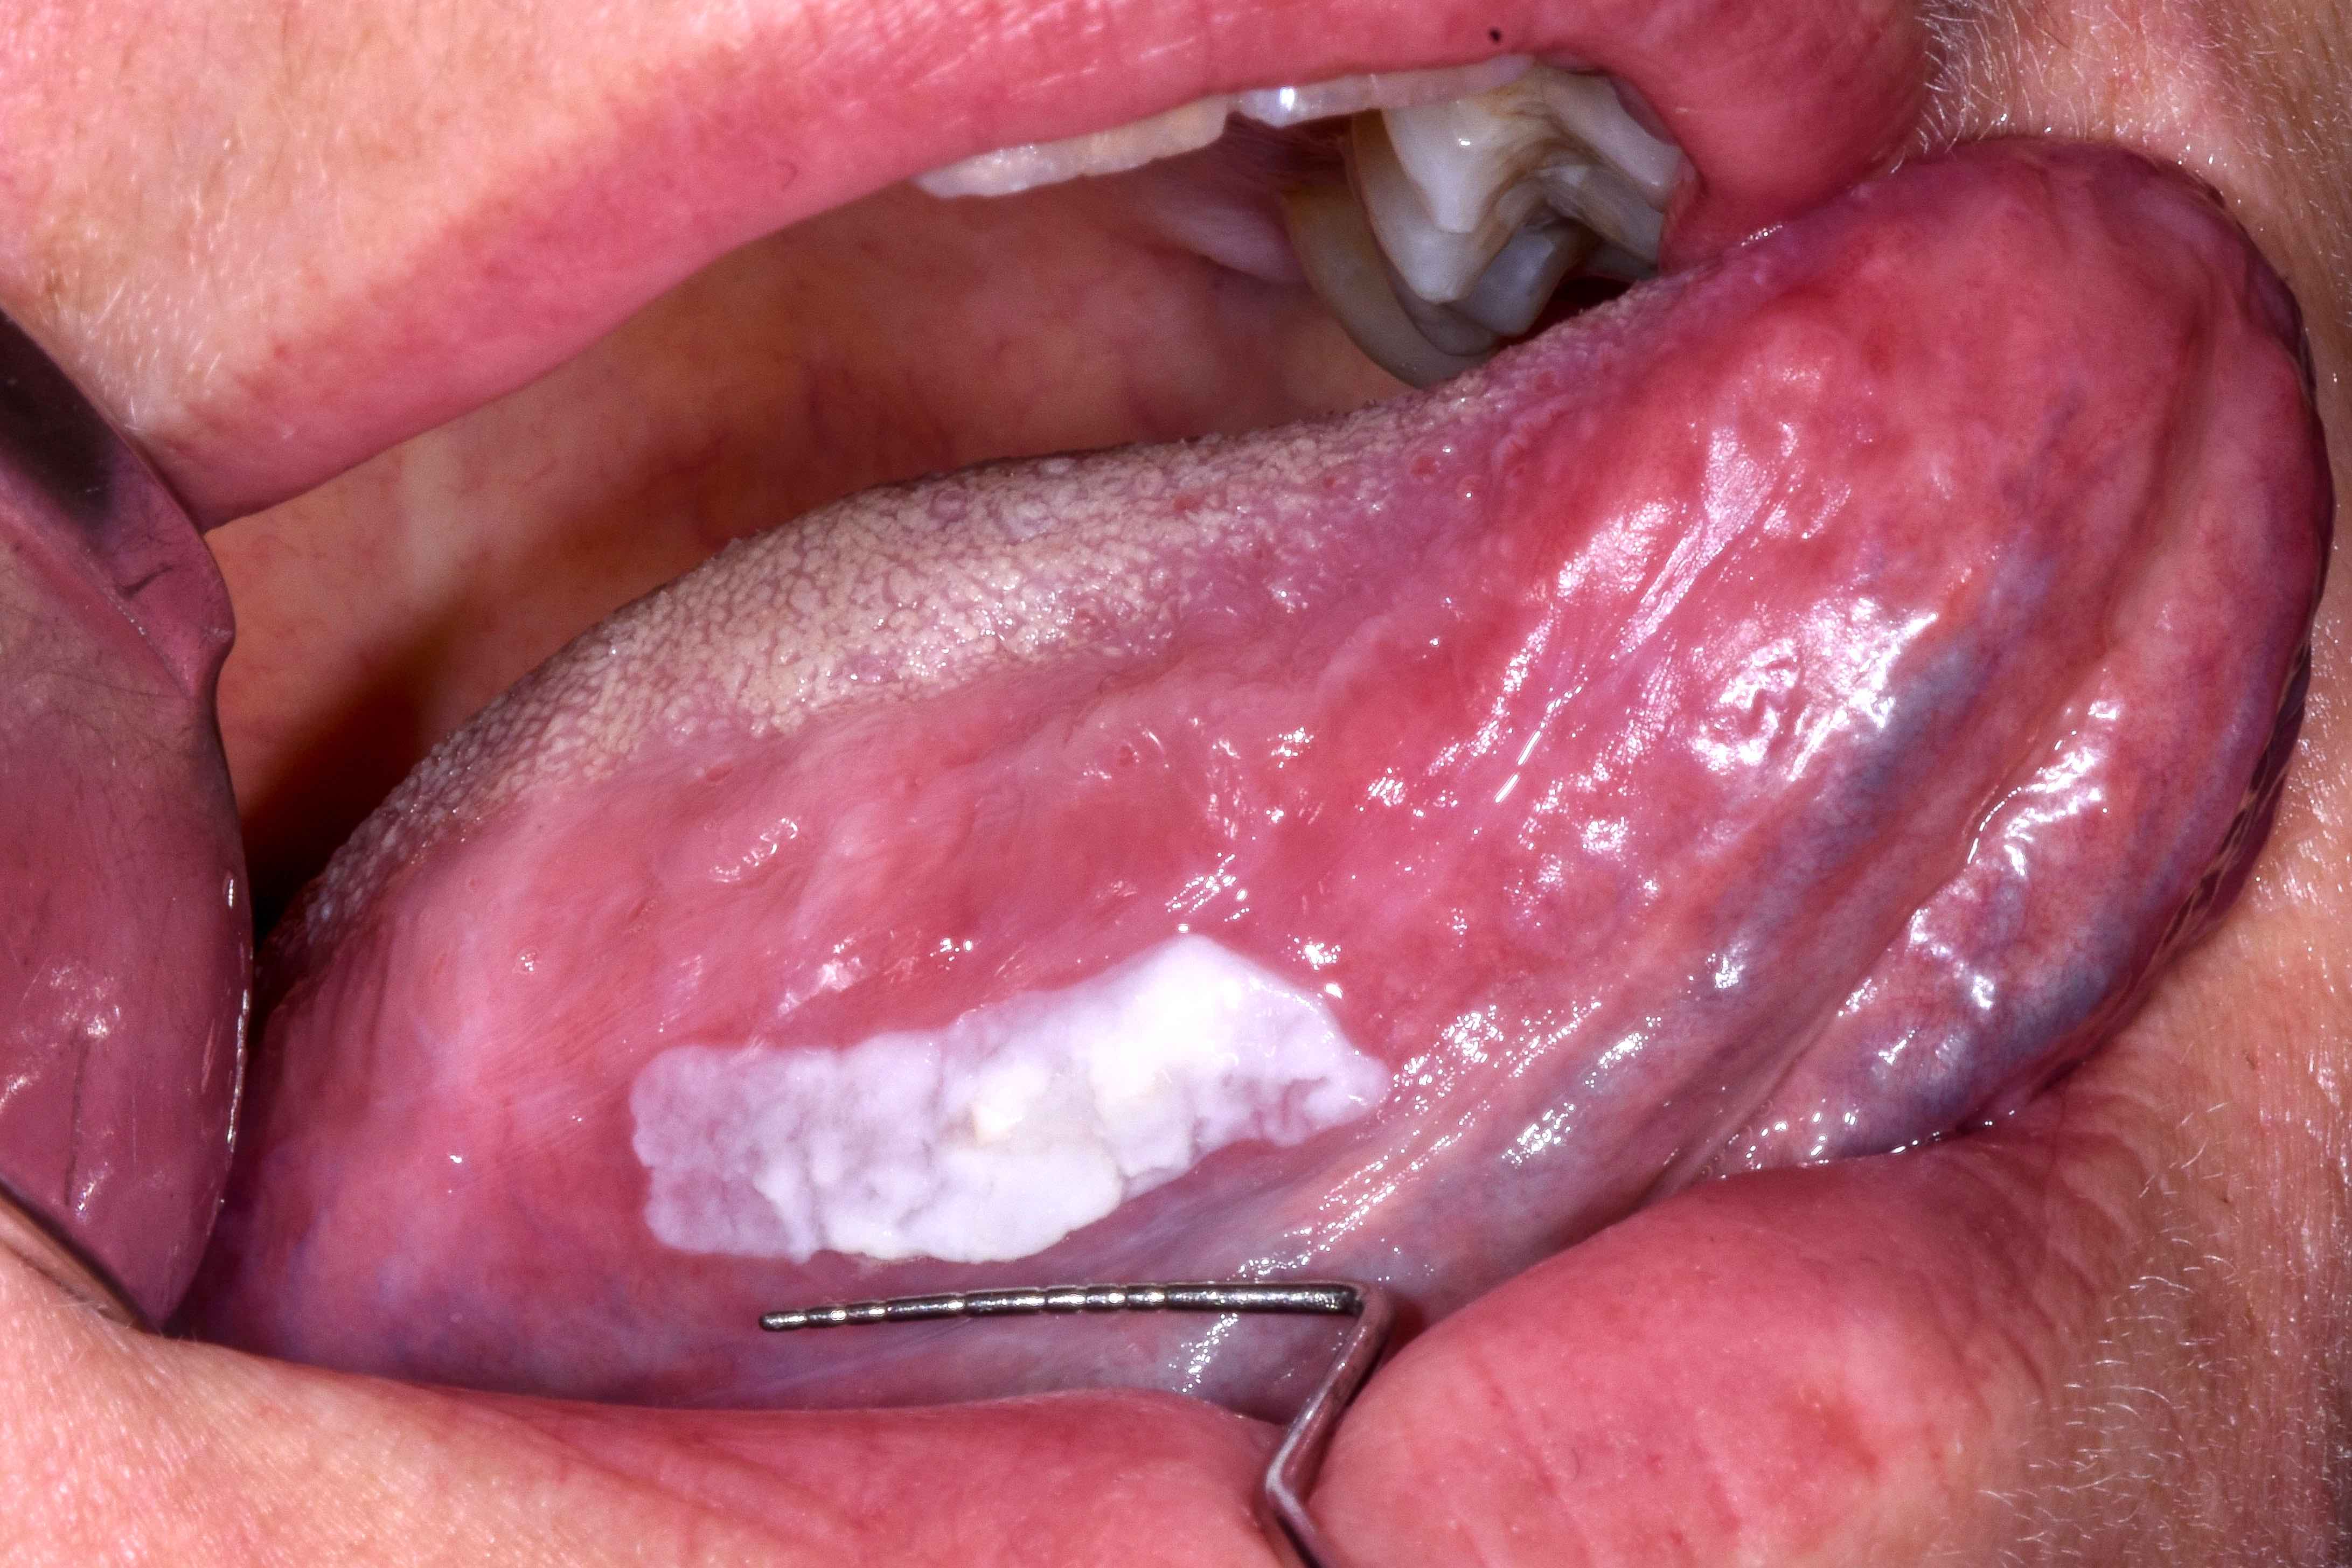 Tongue lesion